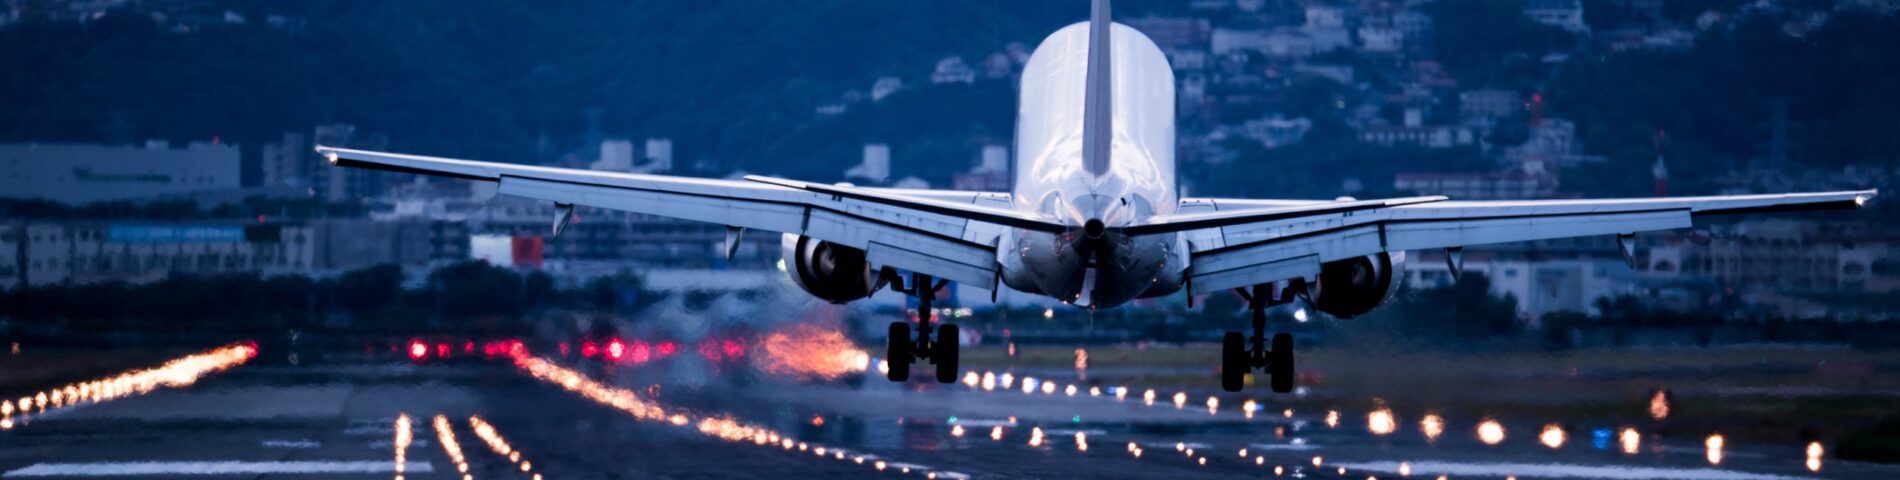 Avión aterrizando en un aeropuerto